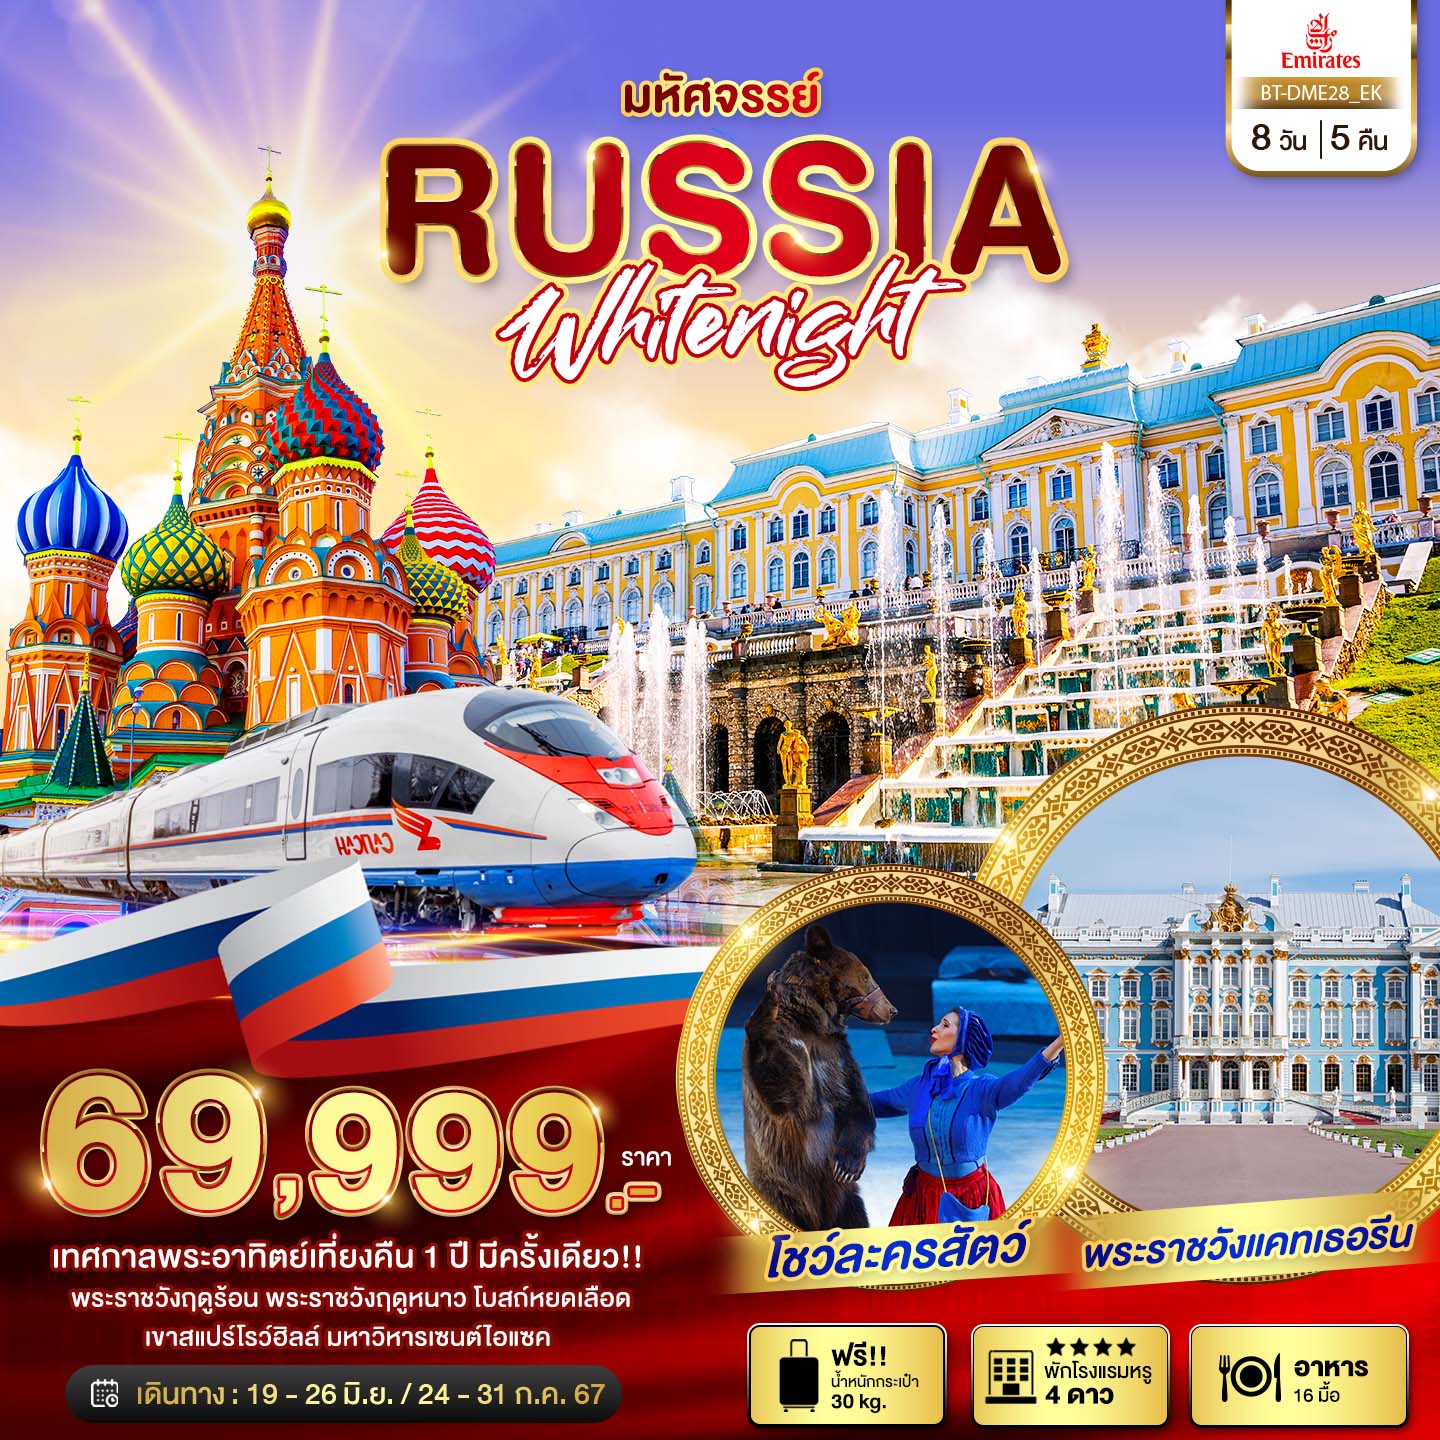 ทัวร์รัสเซีย มหัศจรรย์ รัสเซีย มอสโคว เซนต์ปีเตอร์เบิร์ก เทศกาลพระอาทิตย์เที่ยงคืน 8วัน 5คืน (EK)